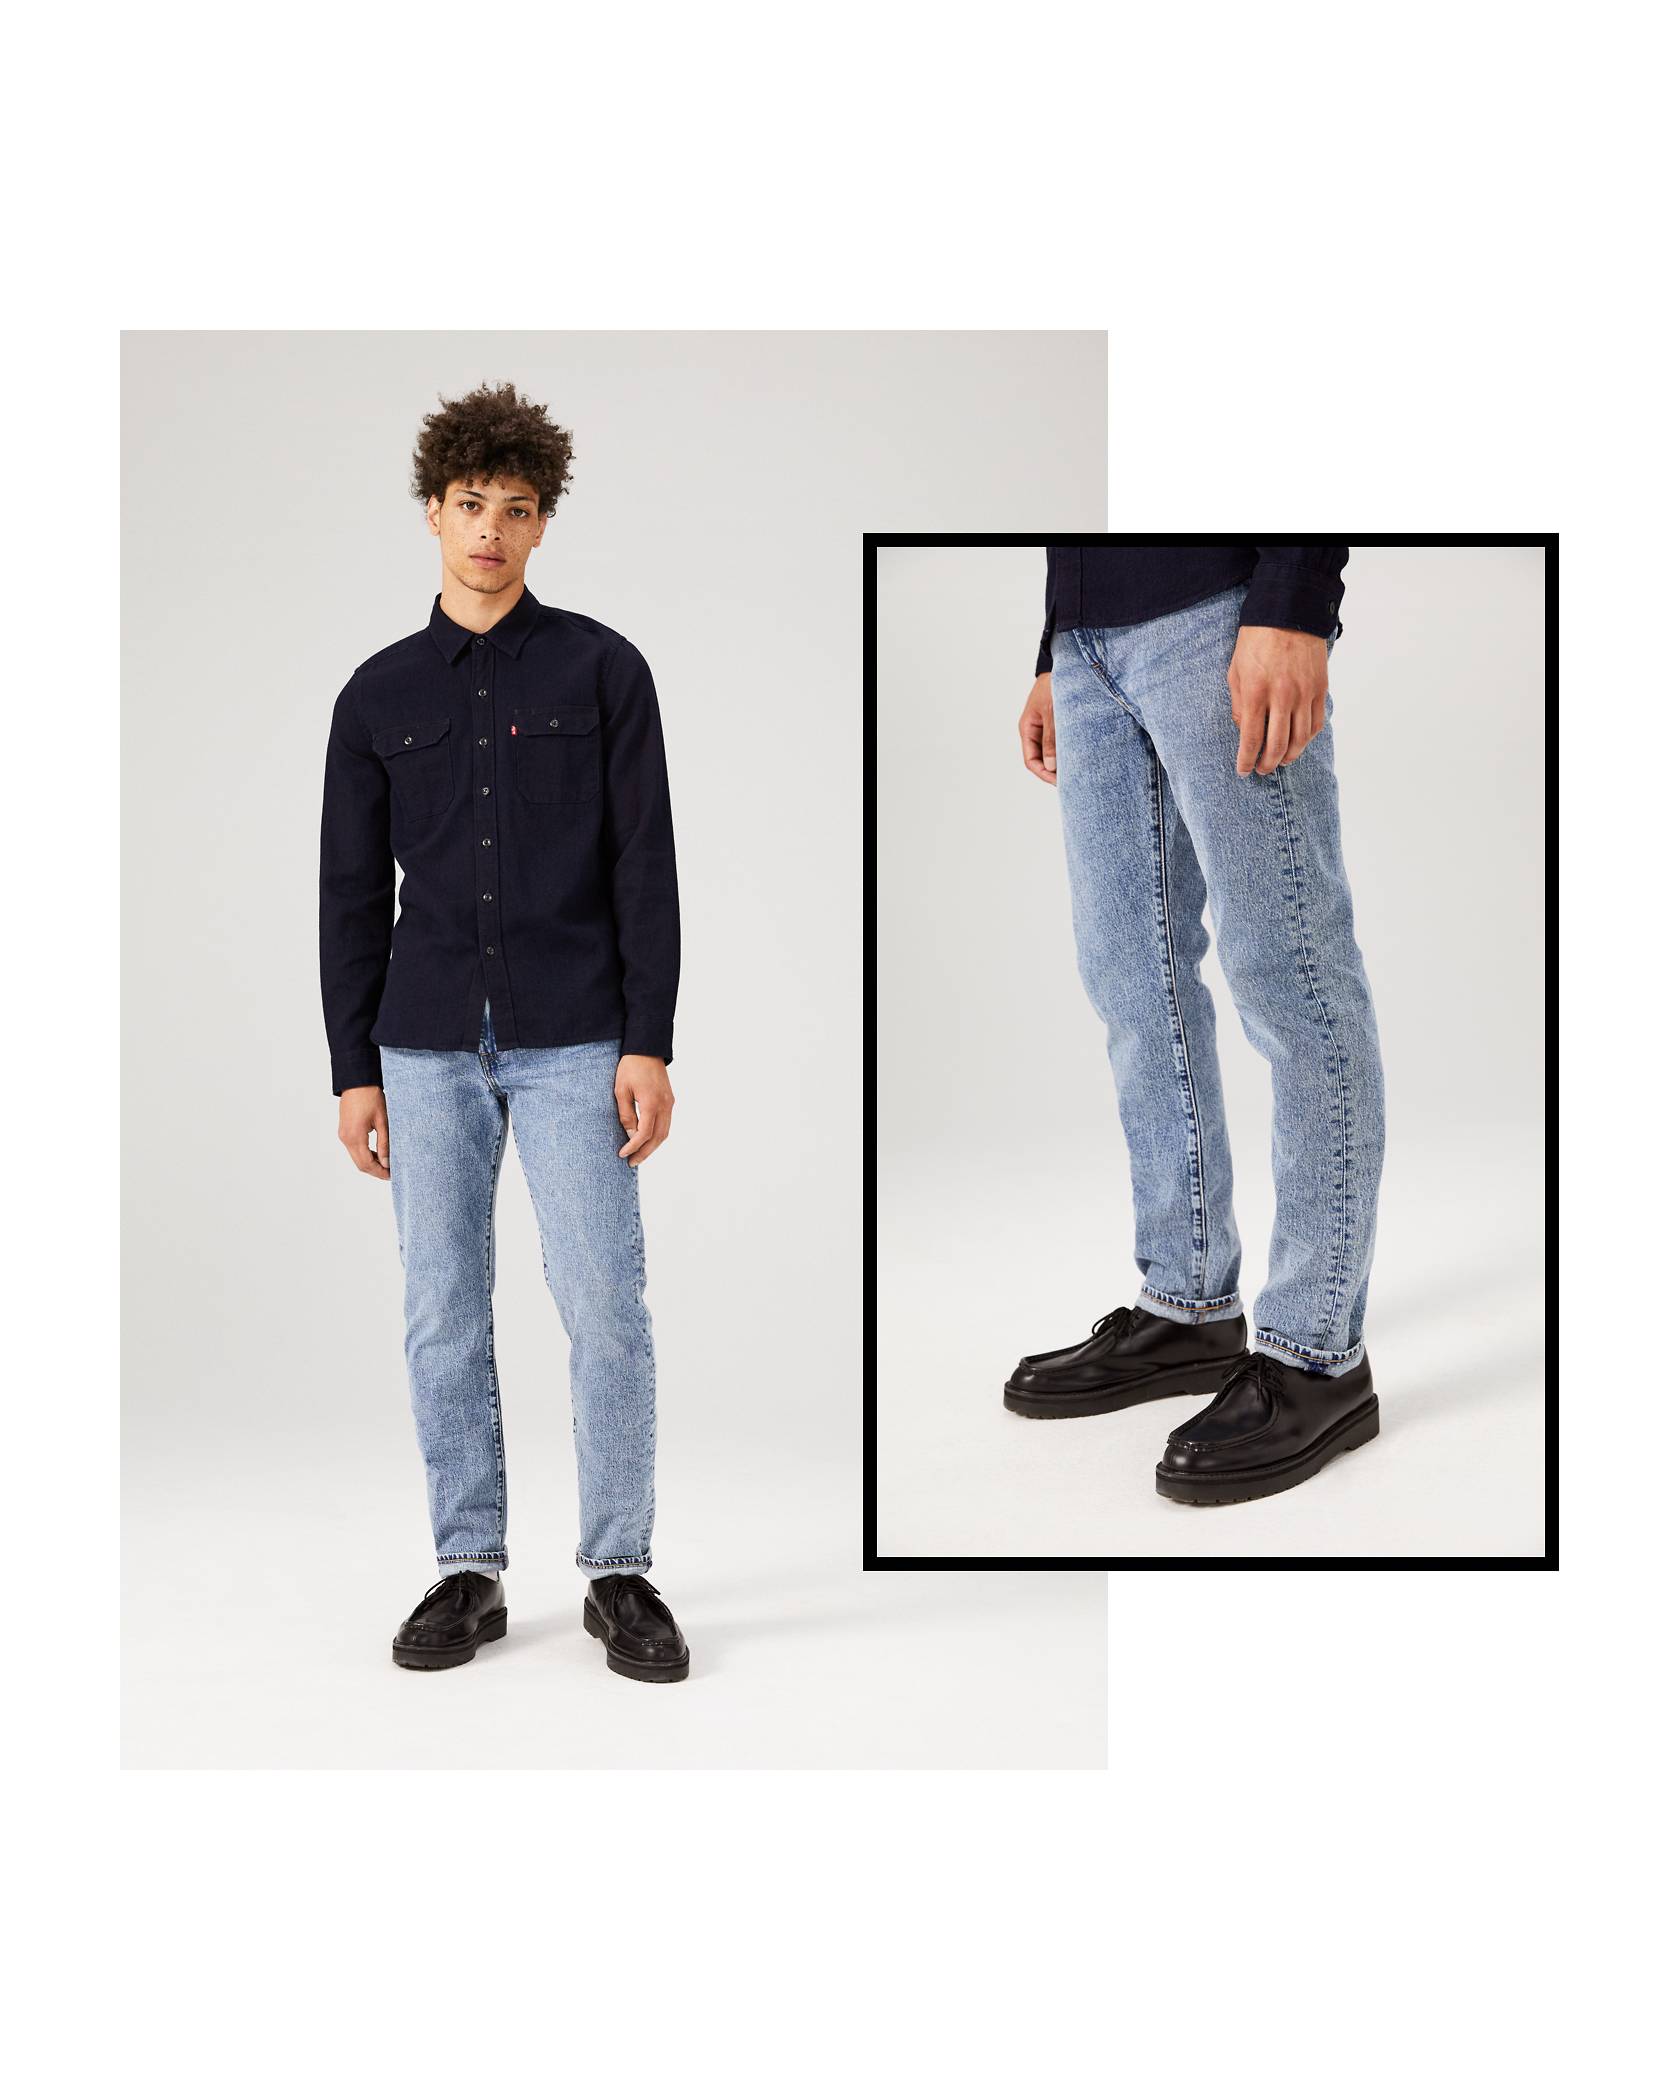 Schaken Zij zijn venster How to Wear Tapered Jeans for Men | Off The Cuff